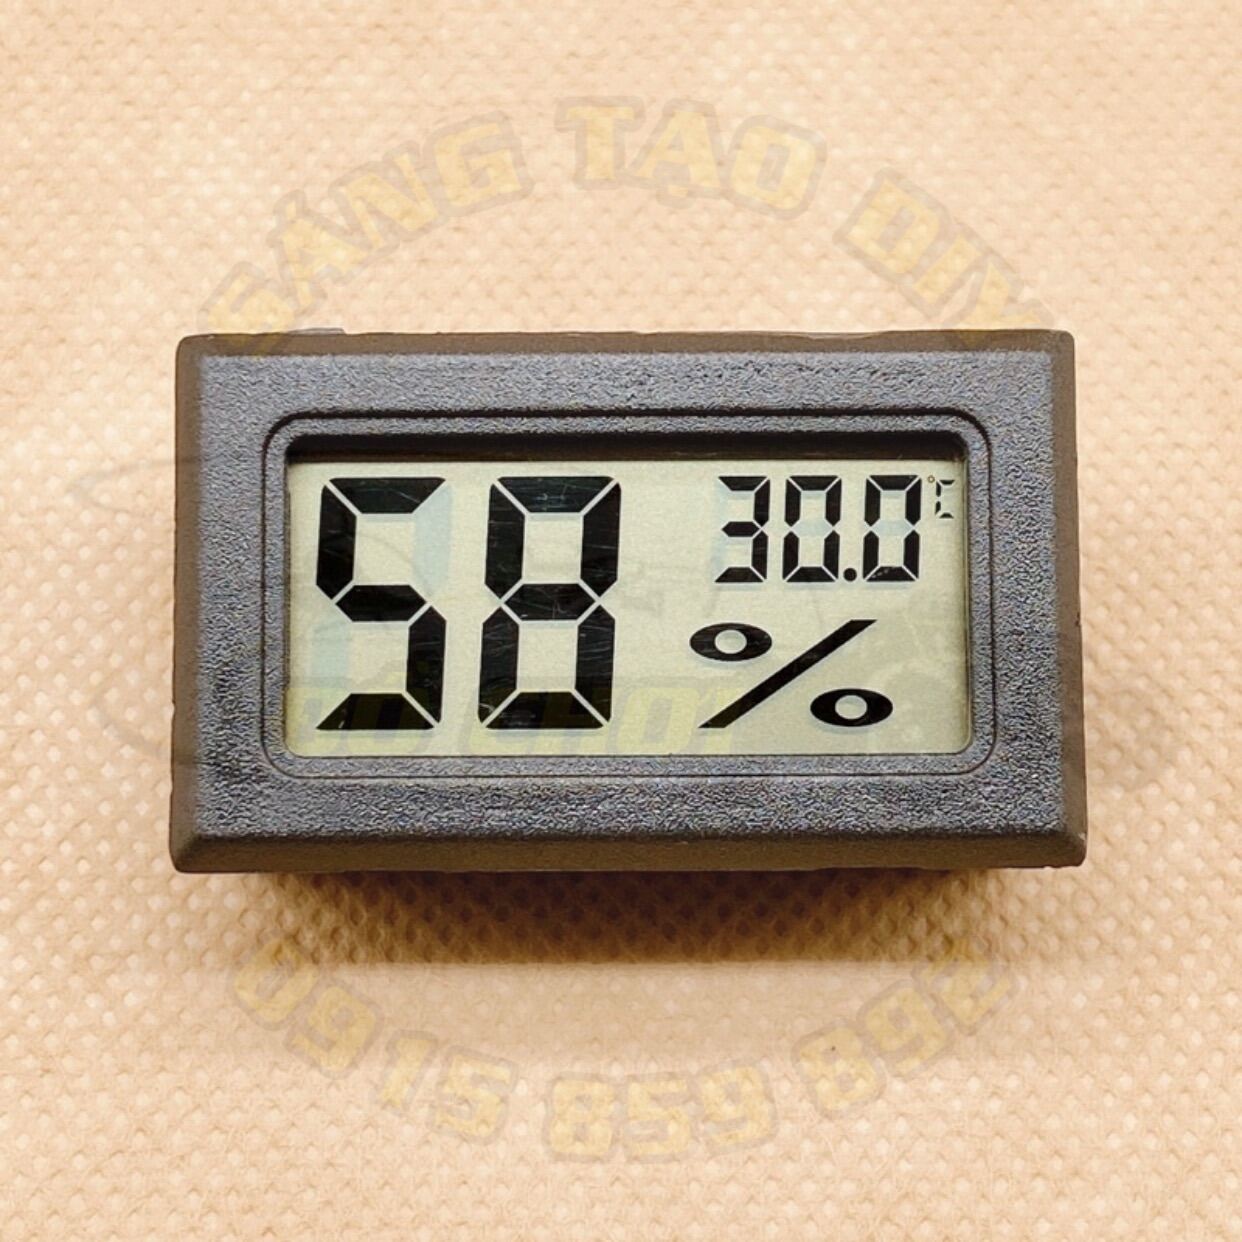 [Giá rẻ] Nhiệt ẩm kế điện tử - Kiểm tra nhiệt độ, độ ẩm nhập khẩu